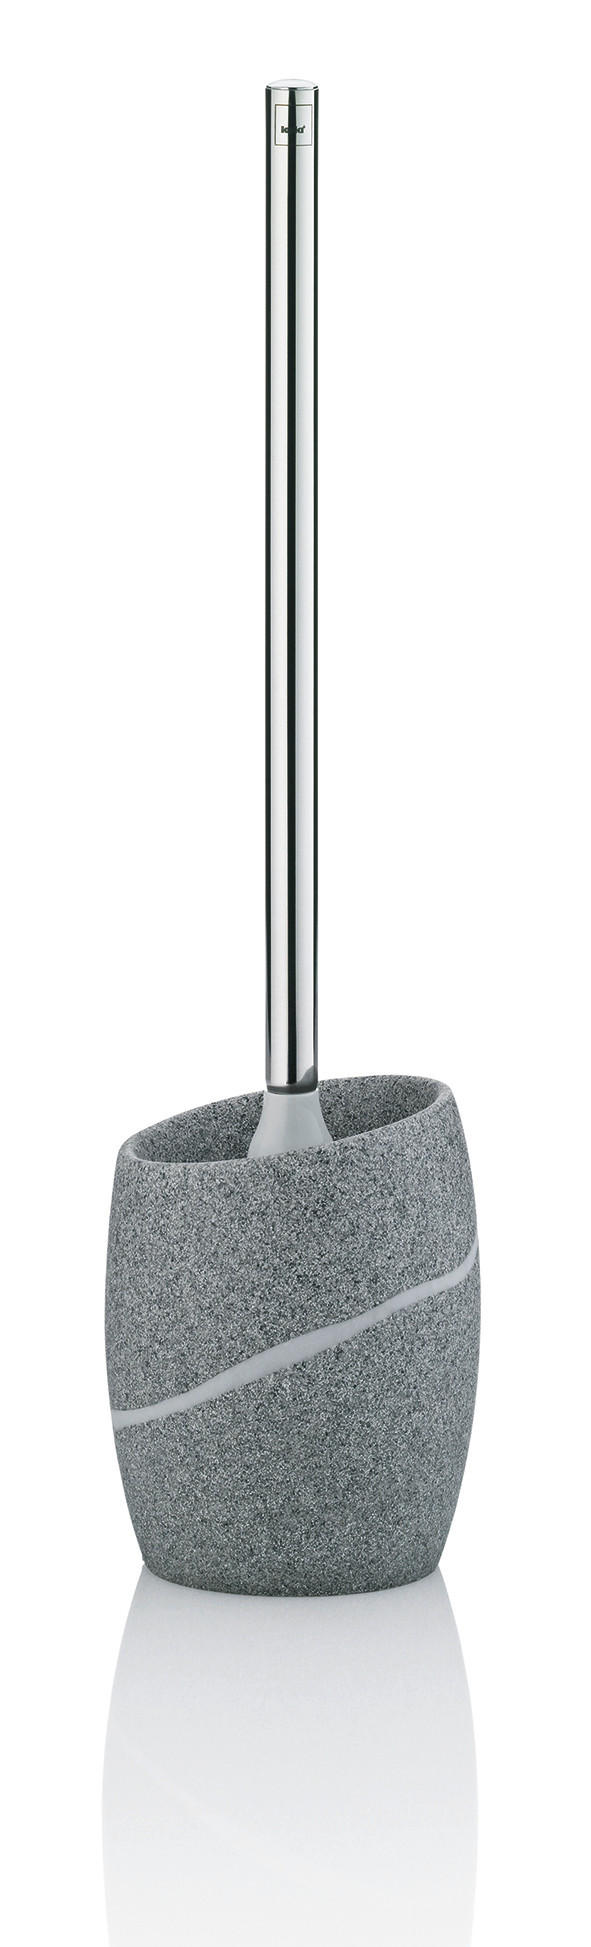 WC GARNITURA S ŠČETKO TALUS - srebrne barve/siva, Konvencionalno, kovina/umetna masa (10,5/37cm) - Kela